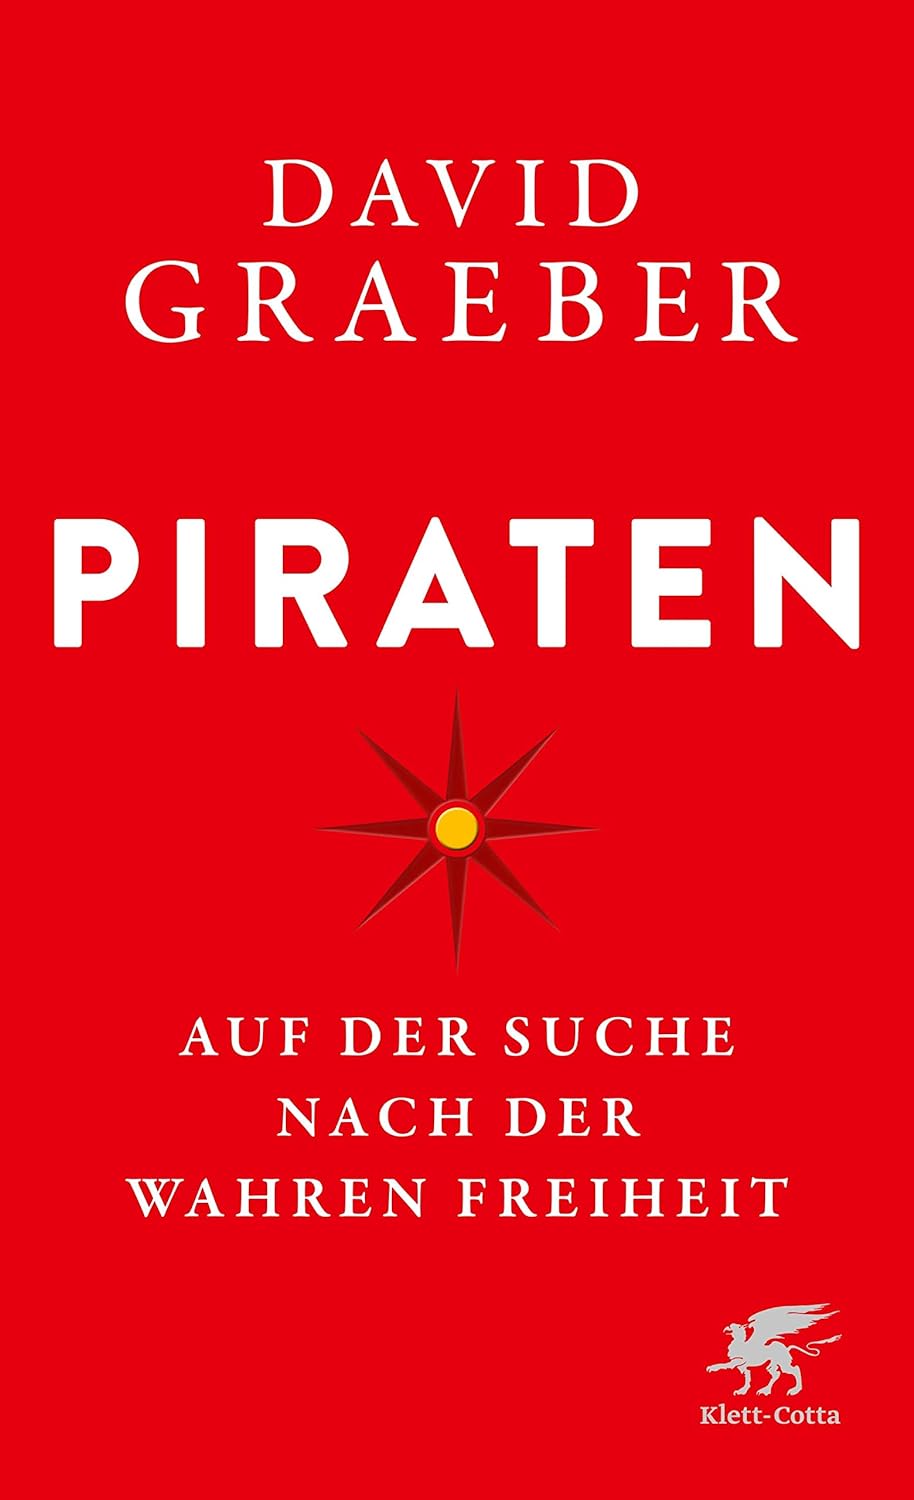 David Graeber: Piraten: Auf der Suche nach der wahren Freiheit (Hardcover, deutsch language, Klett-Cotta)